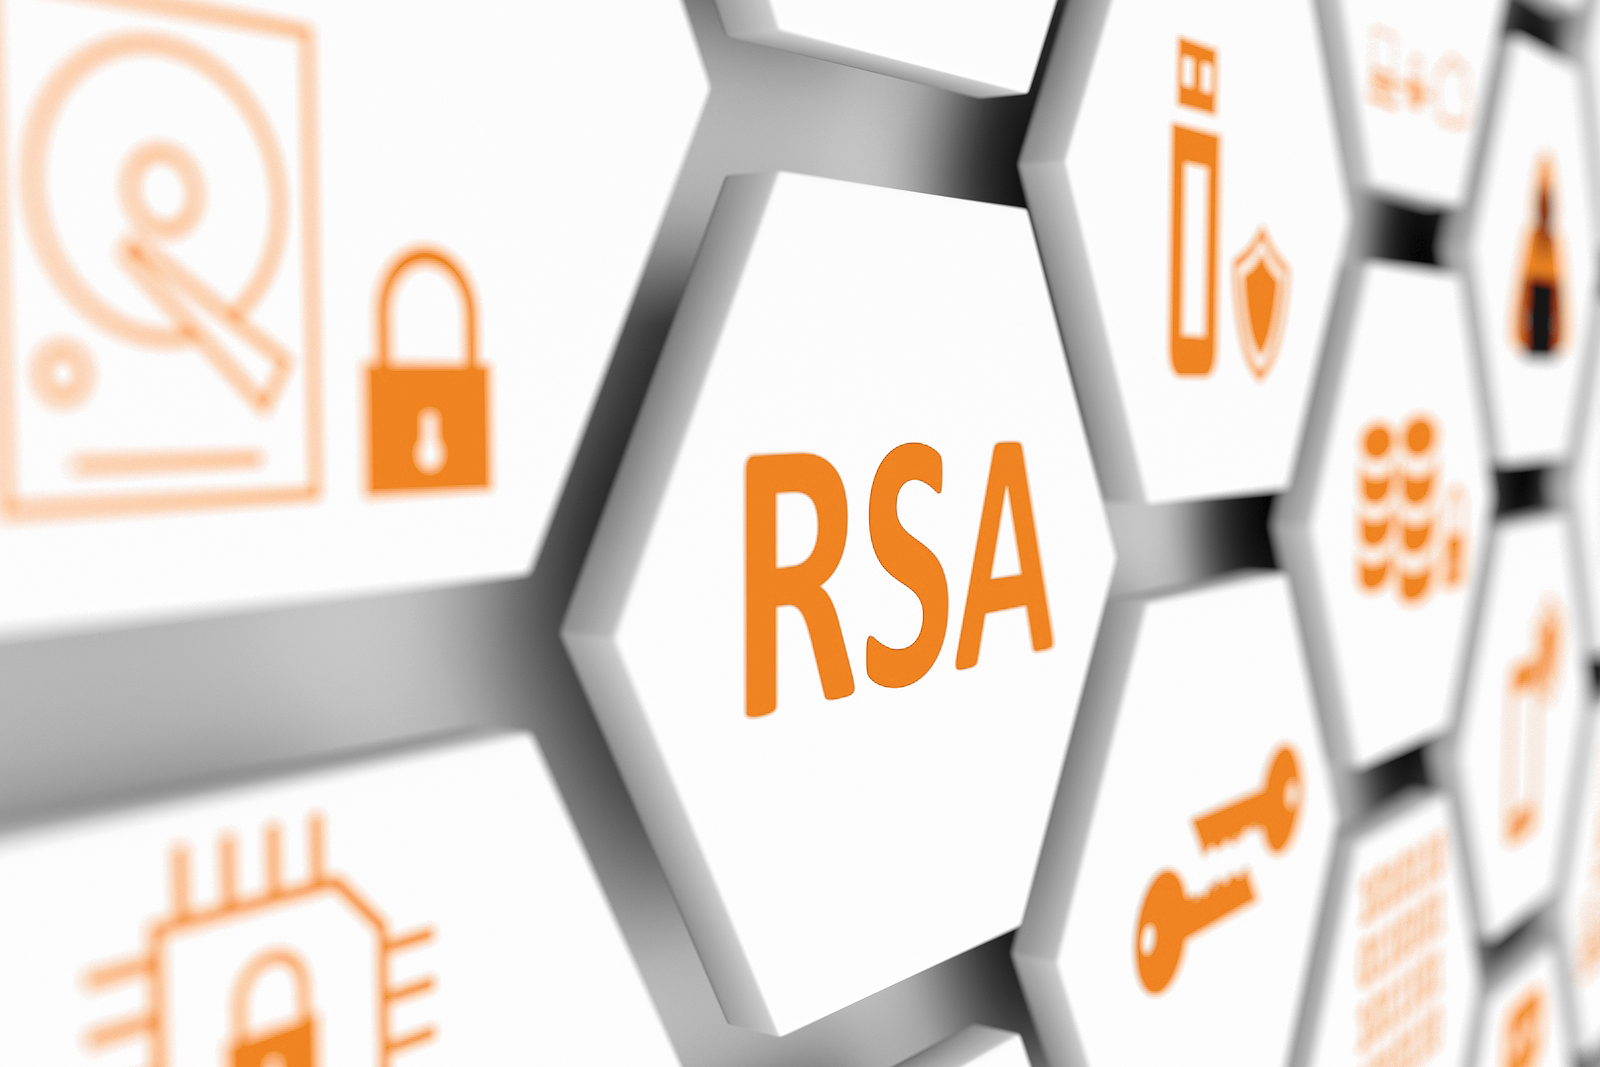 Perché RSA non è più usato?